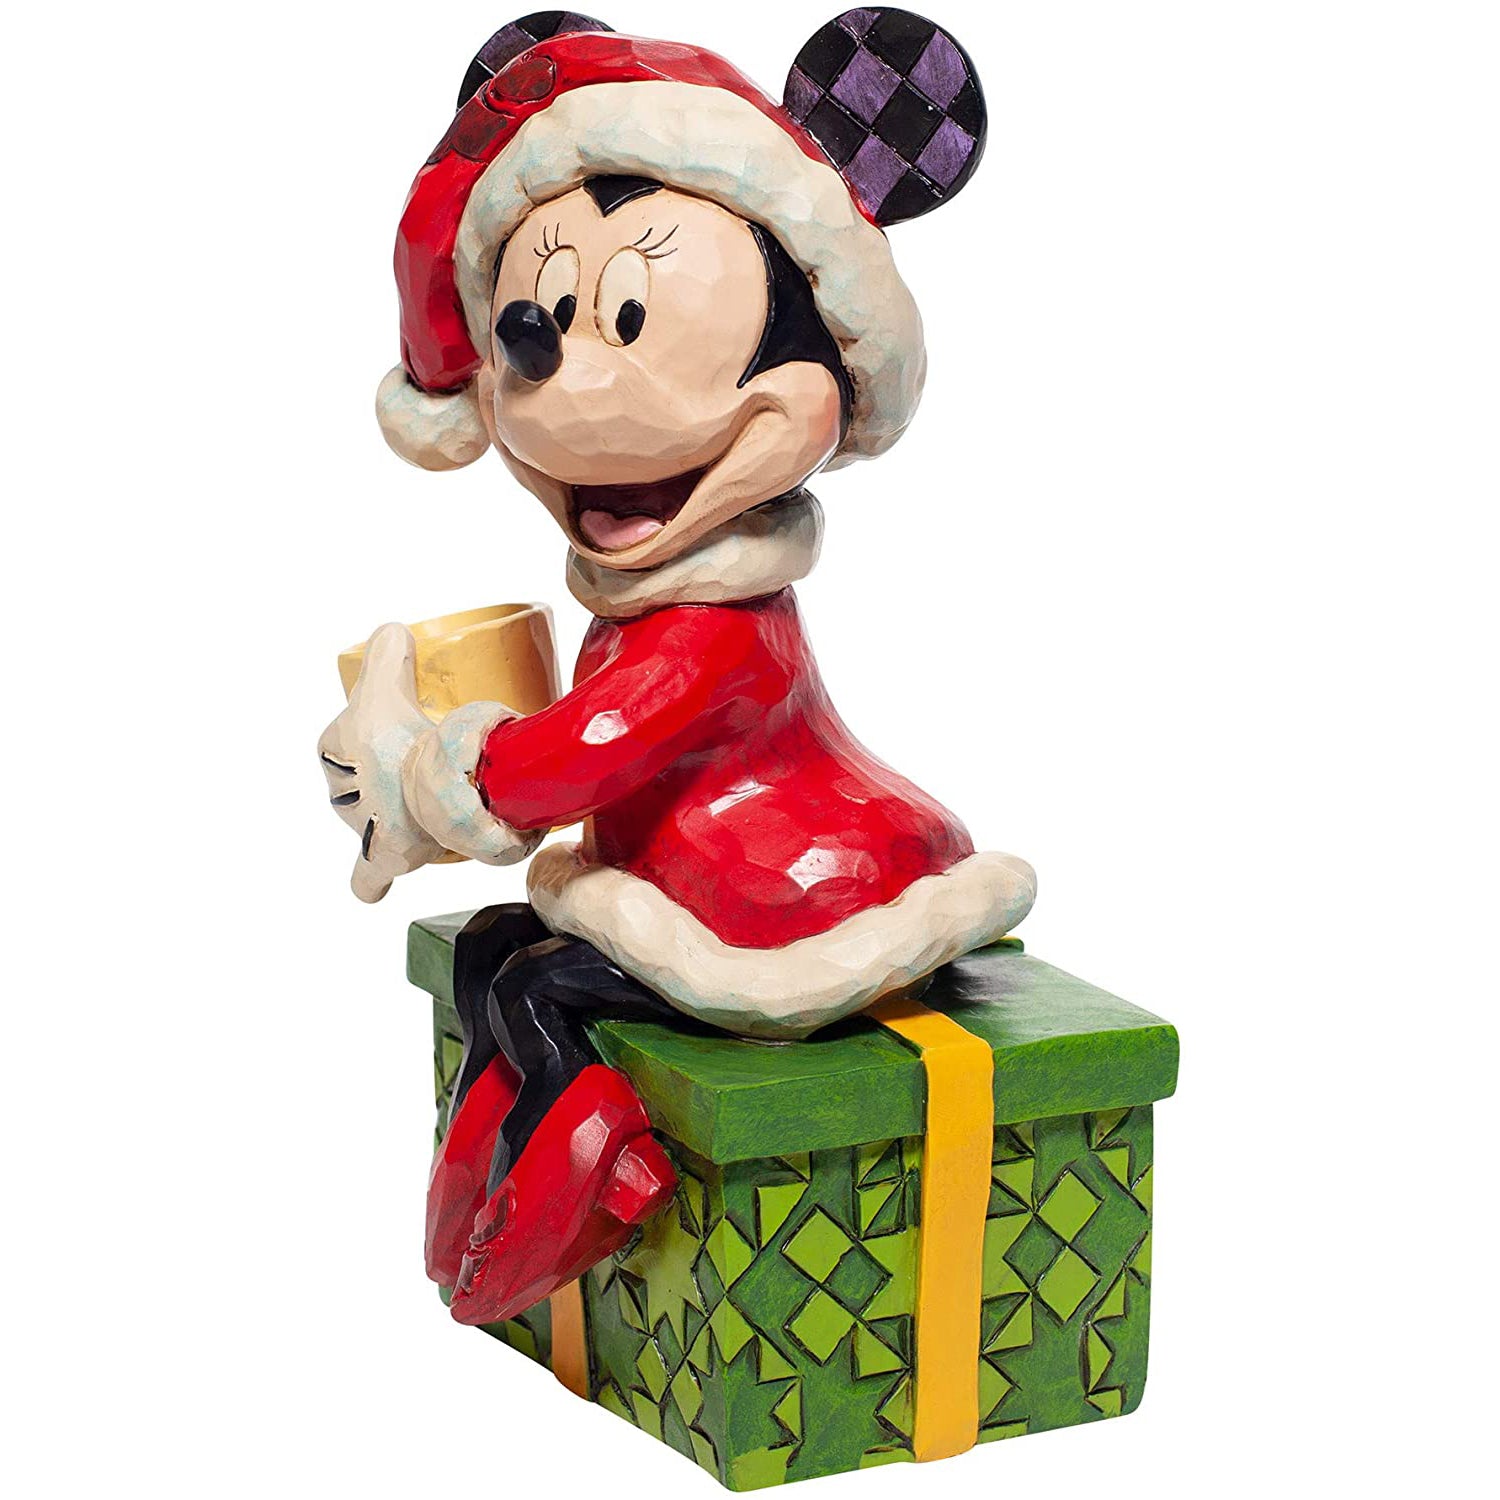 Minnie Mouse "mit heißer Schokolade" Figur - Disney by Jim Shore